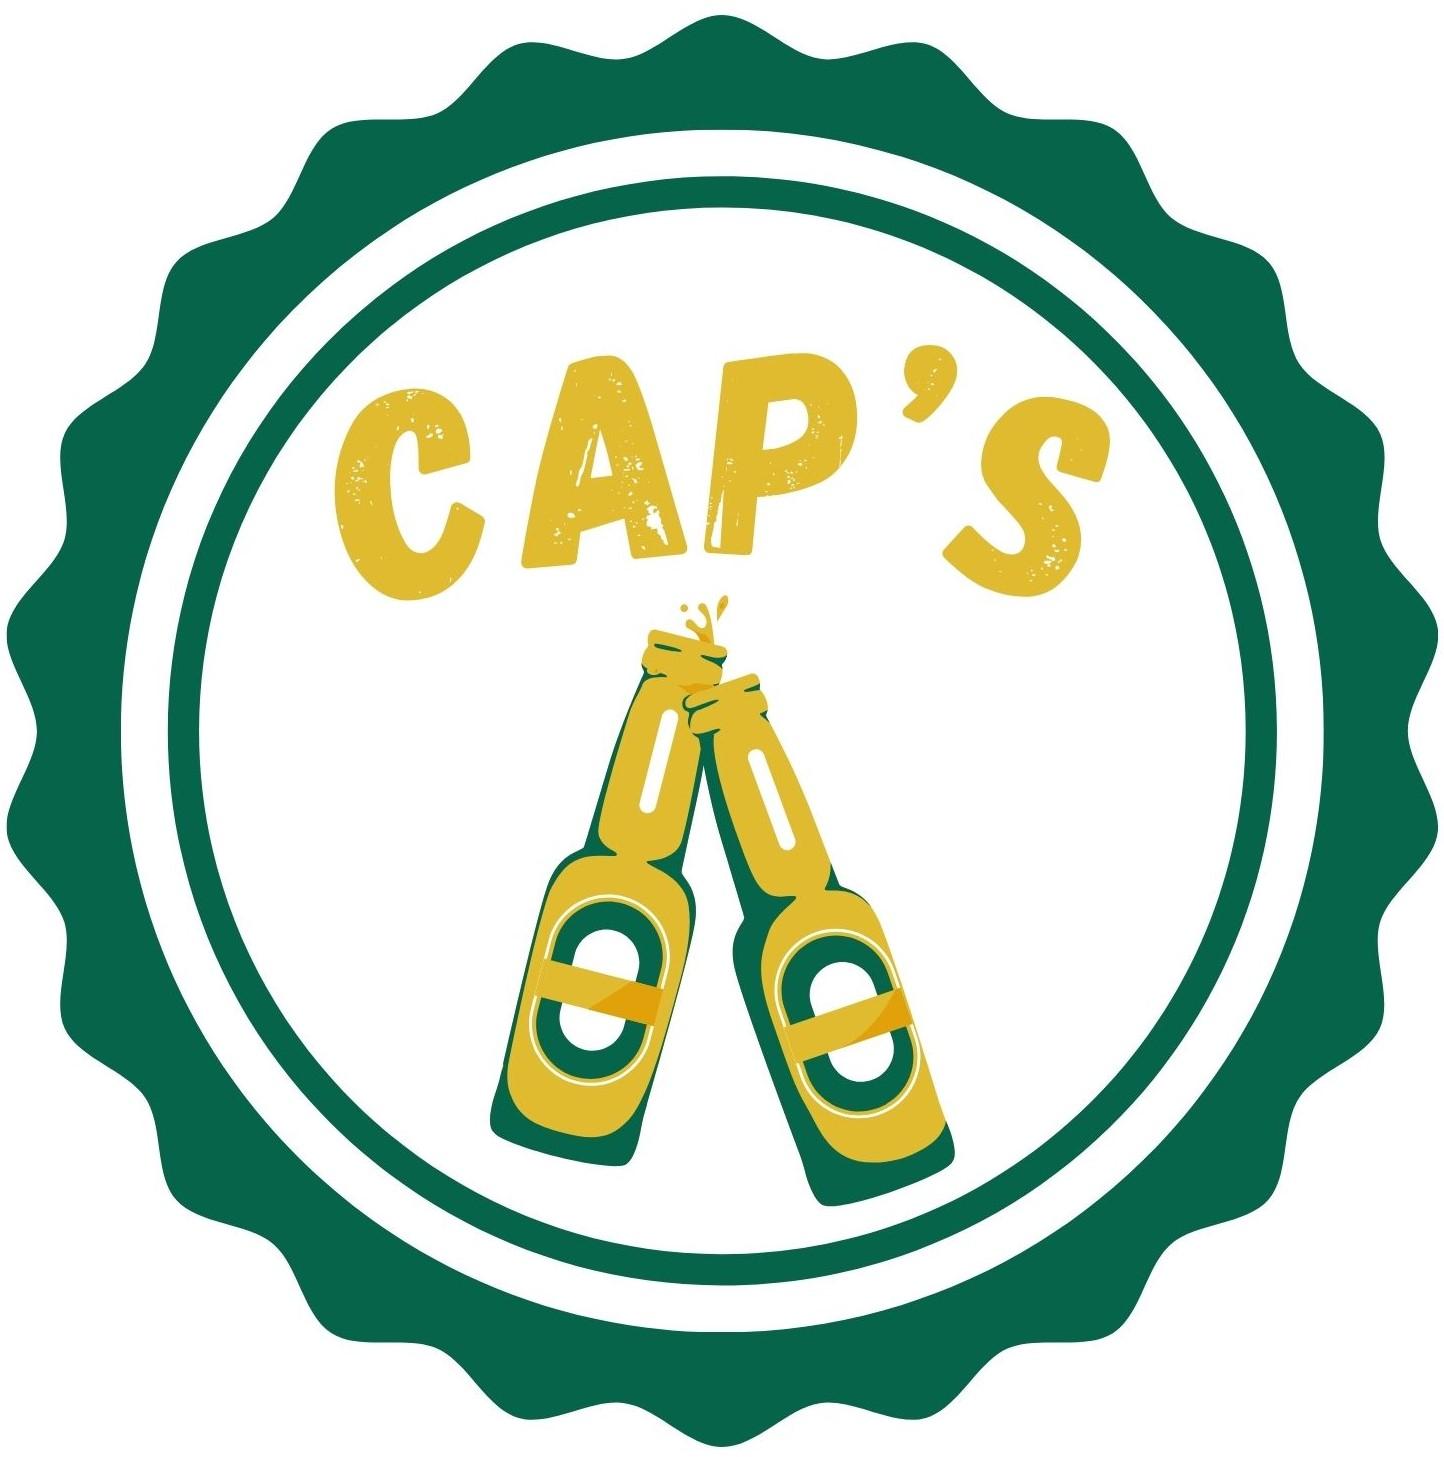 Cap’s